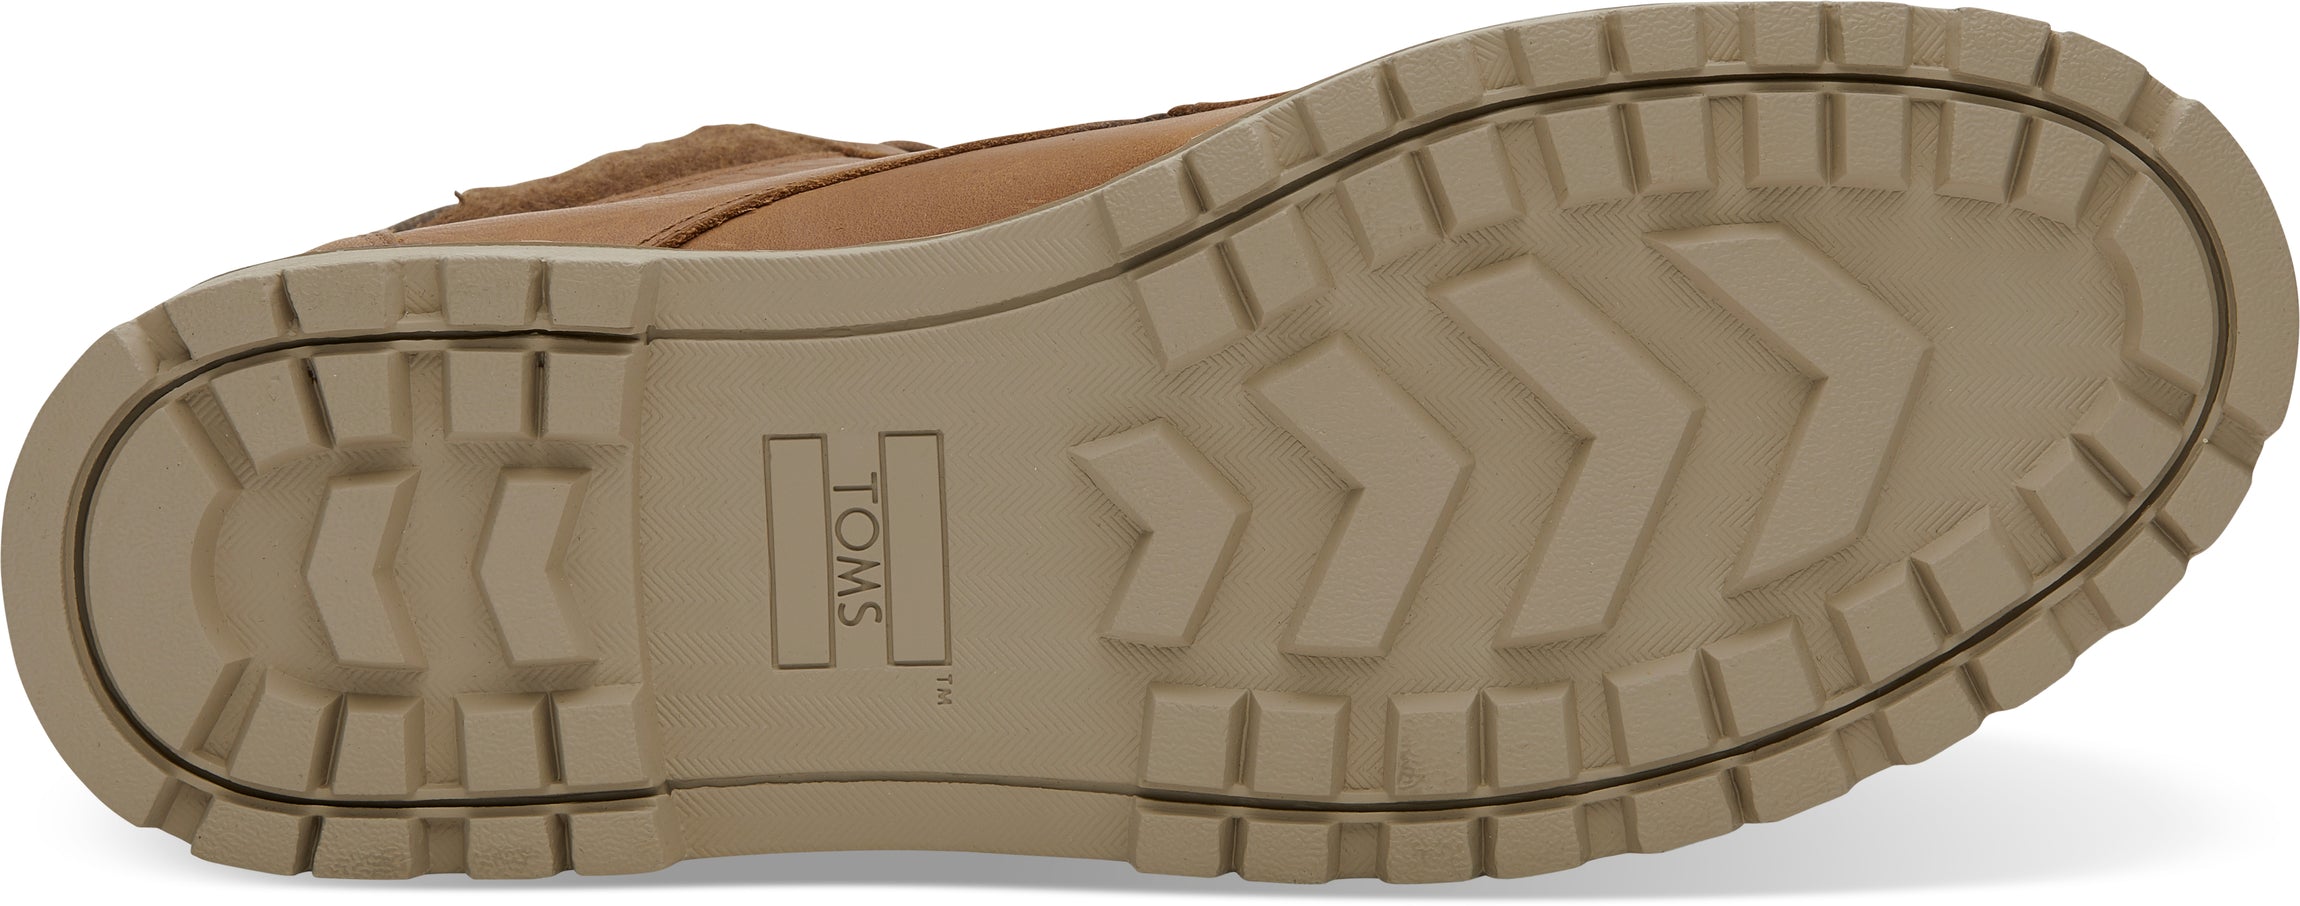 Pánske svetlo-hnedé členkové topánky TOMS Hawthorne